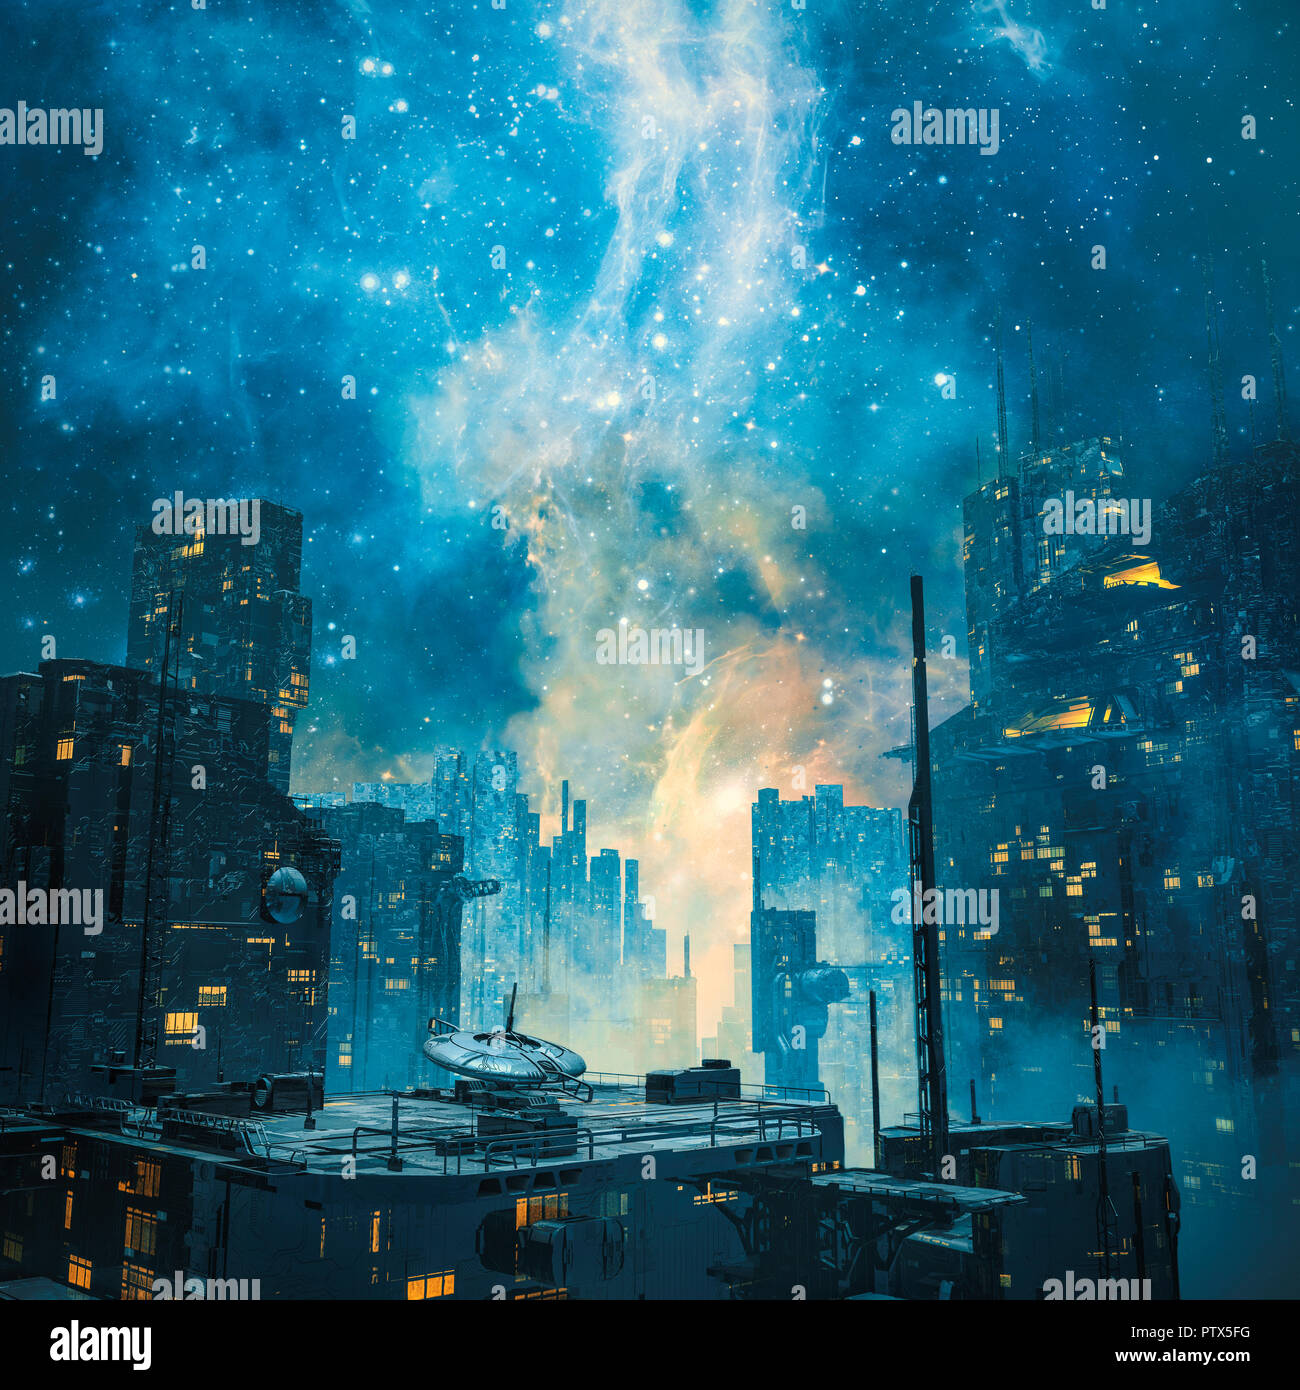 Galactic Space Colony von Nacht-/3D-Darstellung der Dunklen futuristische Science-Fiction-Stadt unter einem leuchtenden Galaxie im Himmel Stockfoto